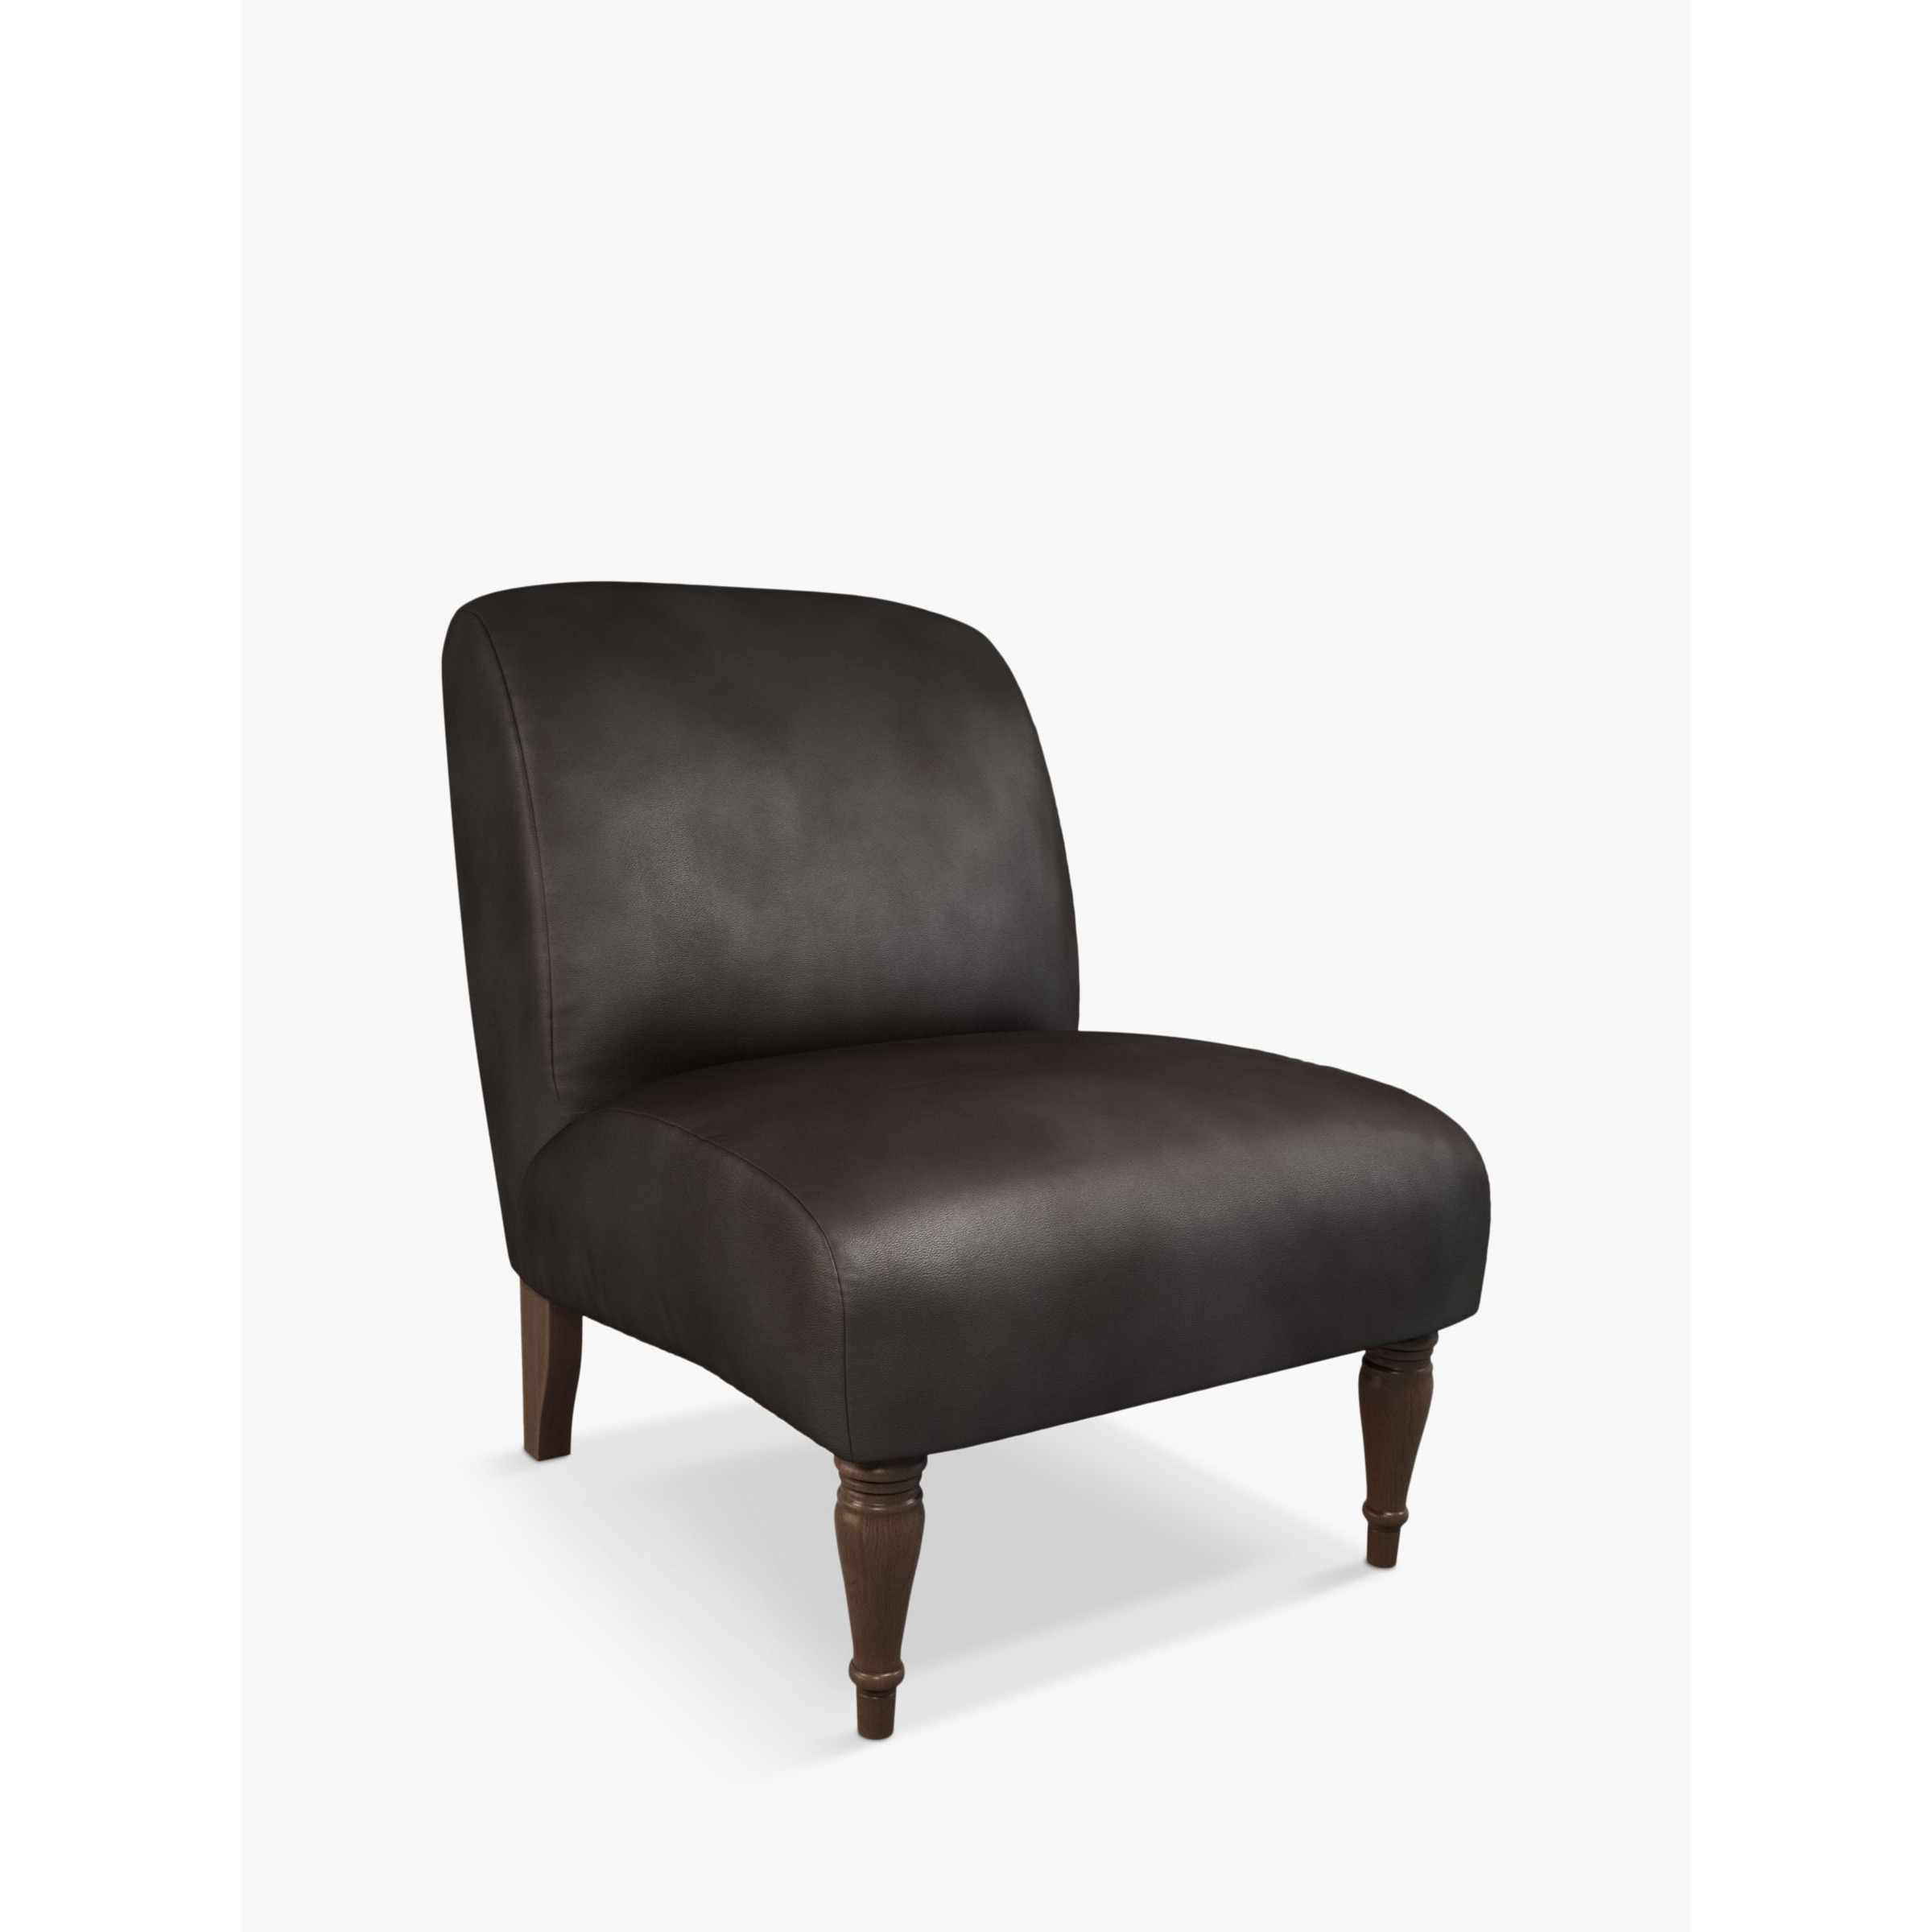 John Lewis Lounge Leather Chair, Dark Leg - image 1